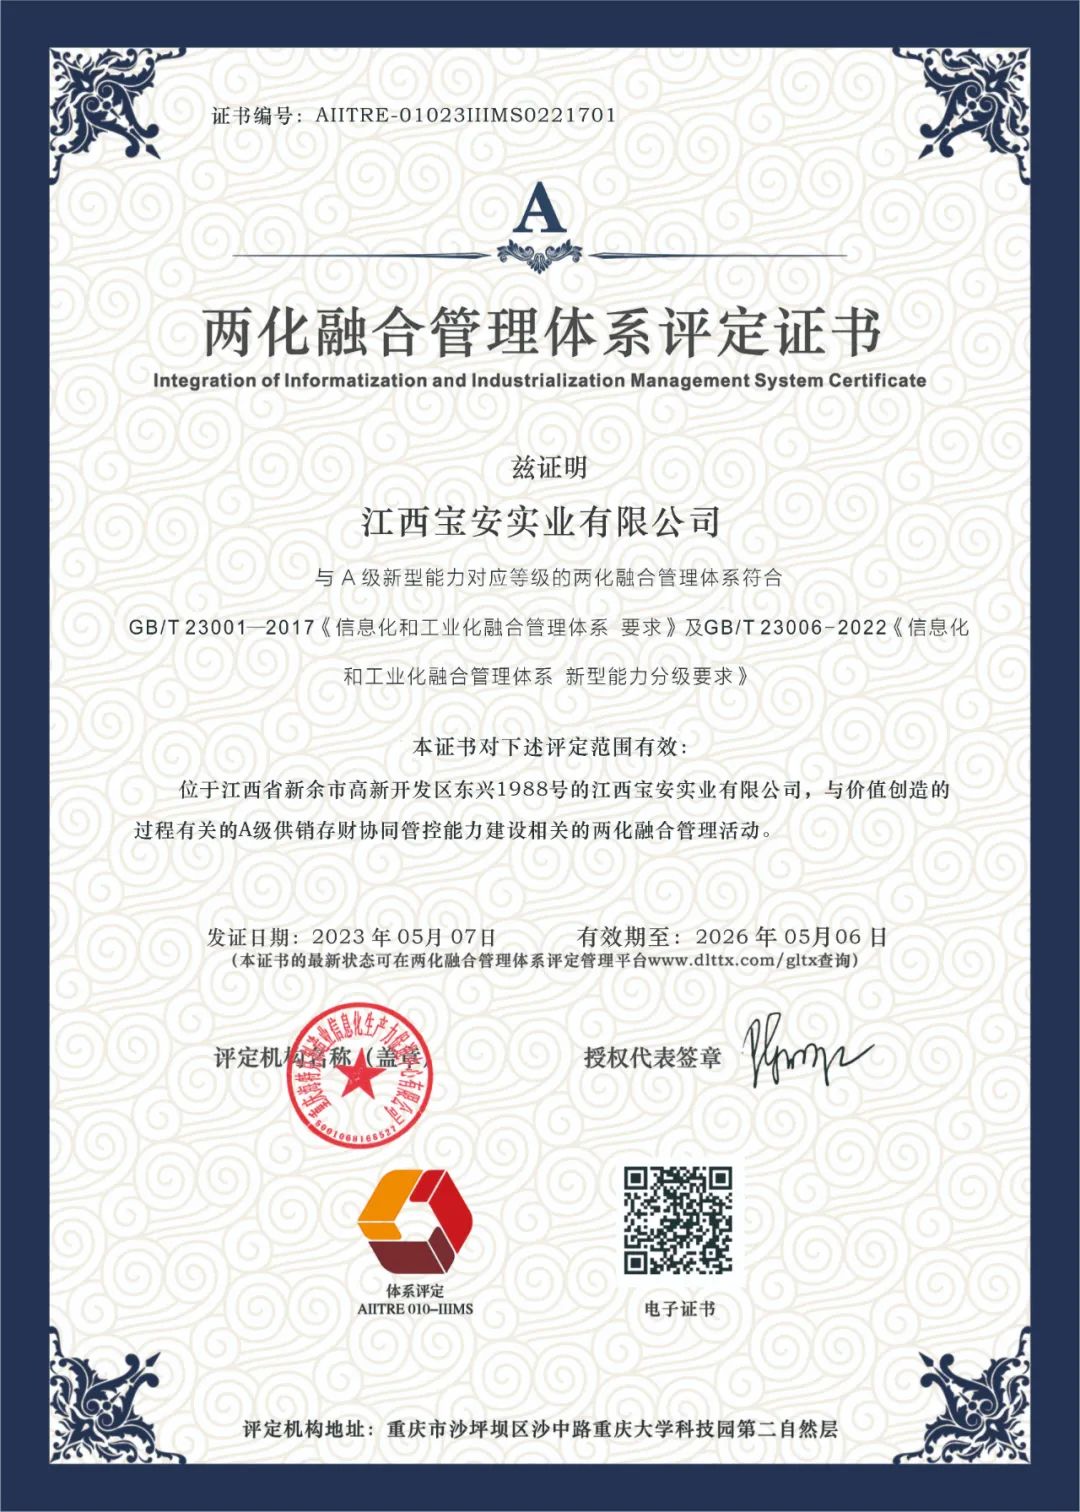 喜报！！！恭喜宝安消防正式获得“两化融合管理体系评定证书”！